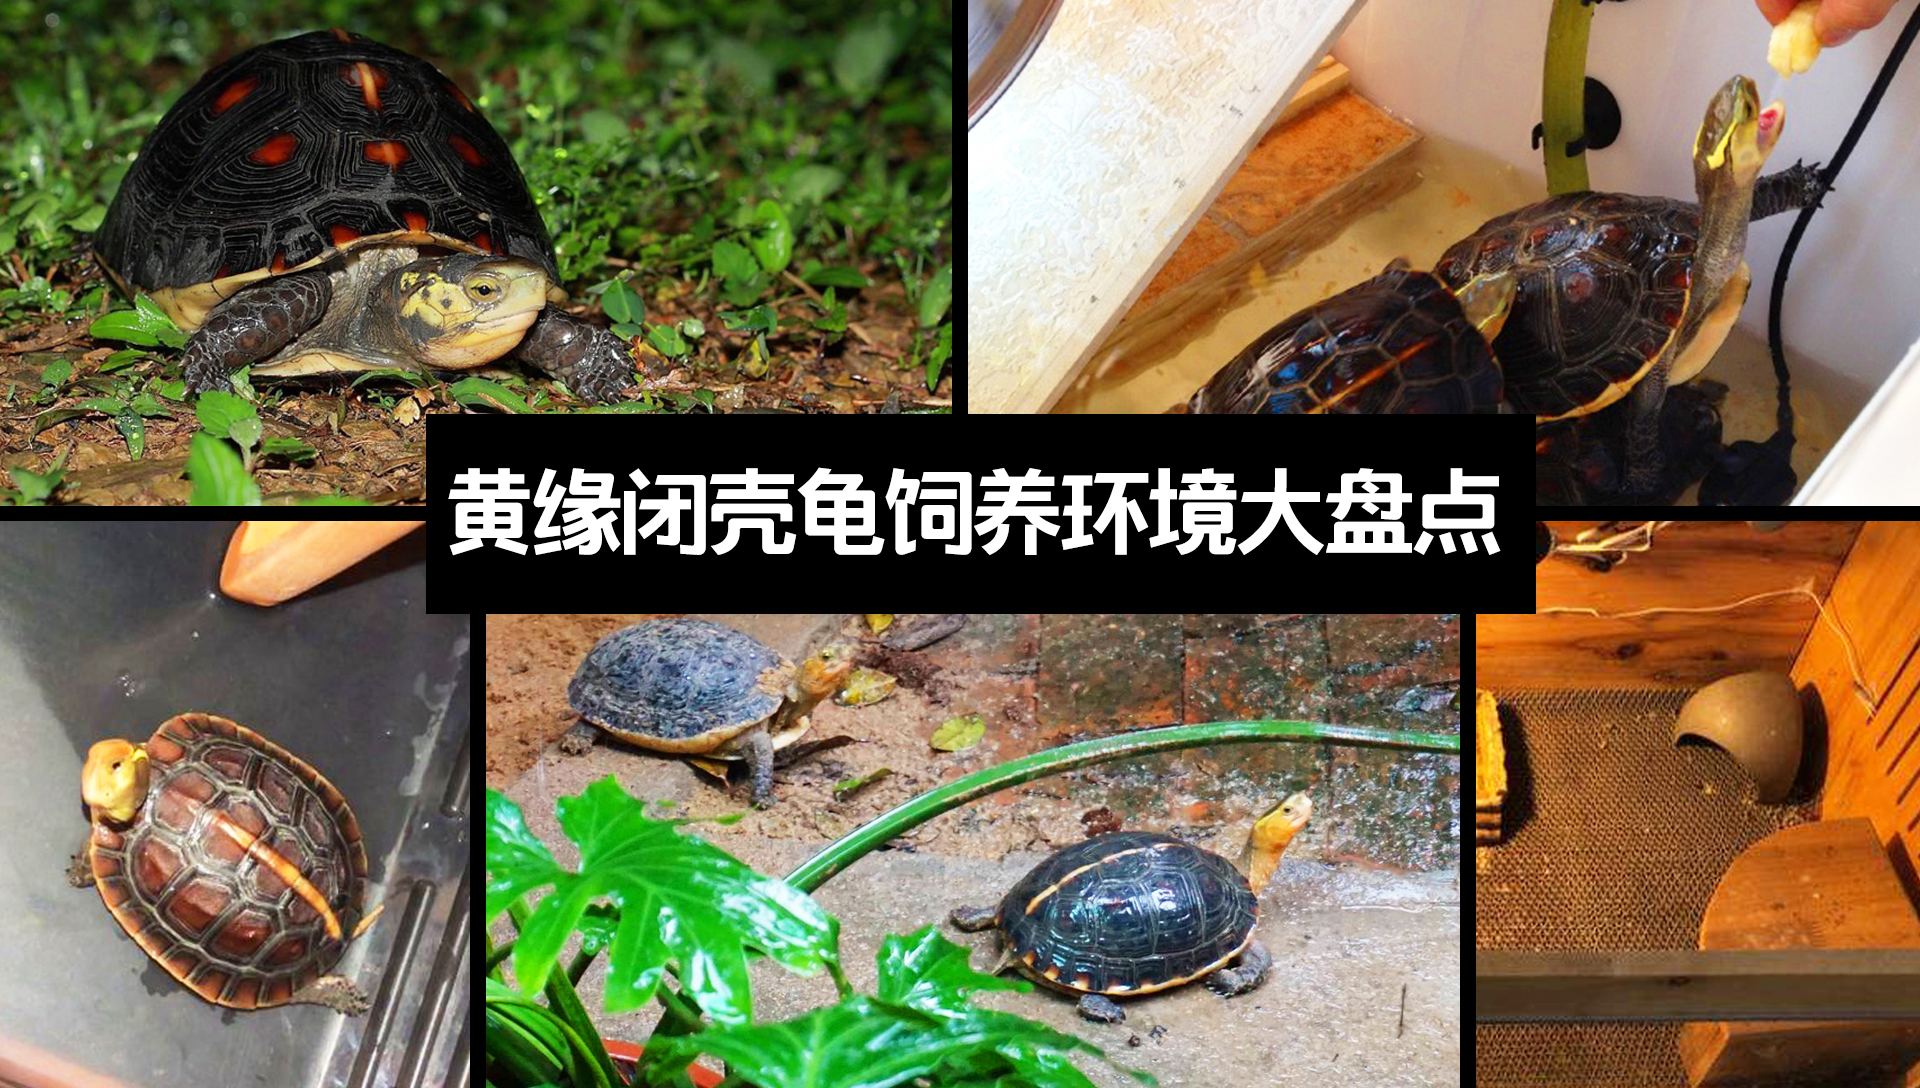 【黄缘闭壳龟饲养指南(二)】黄缘龟饲养环境大盘点,不同的条件选择不